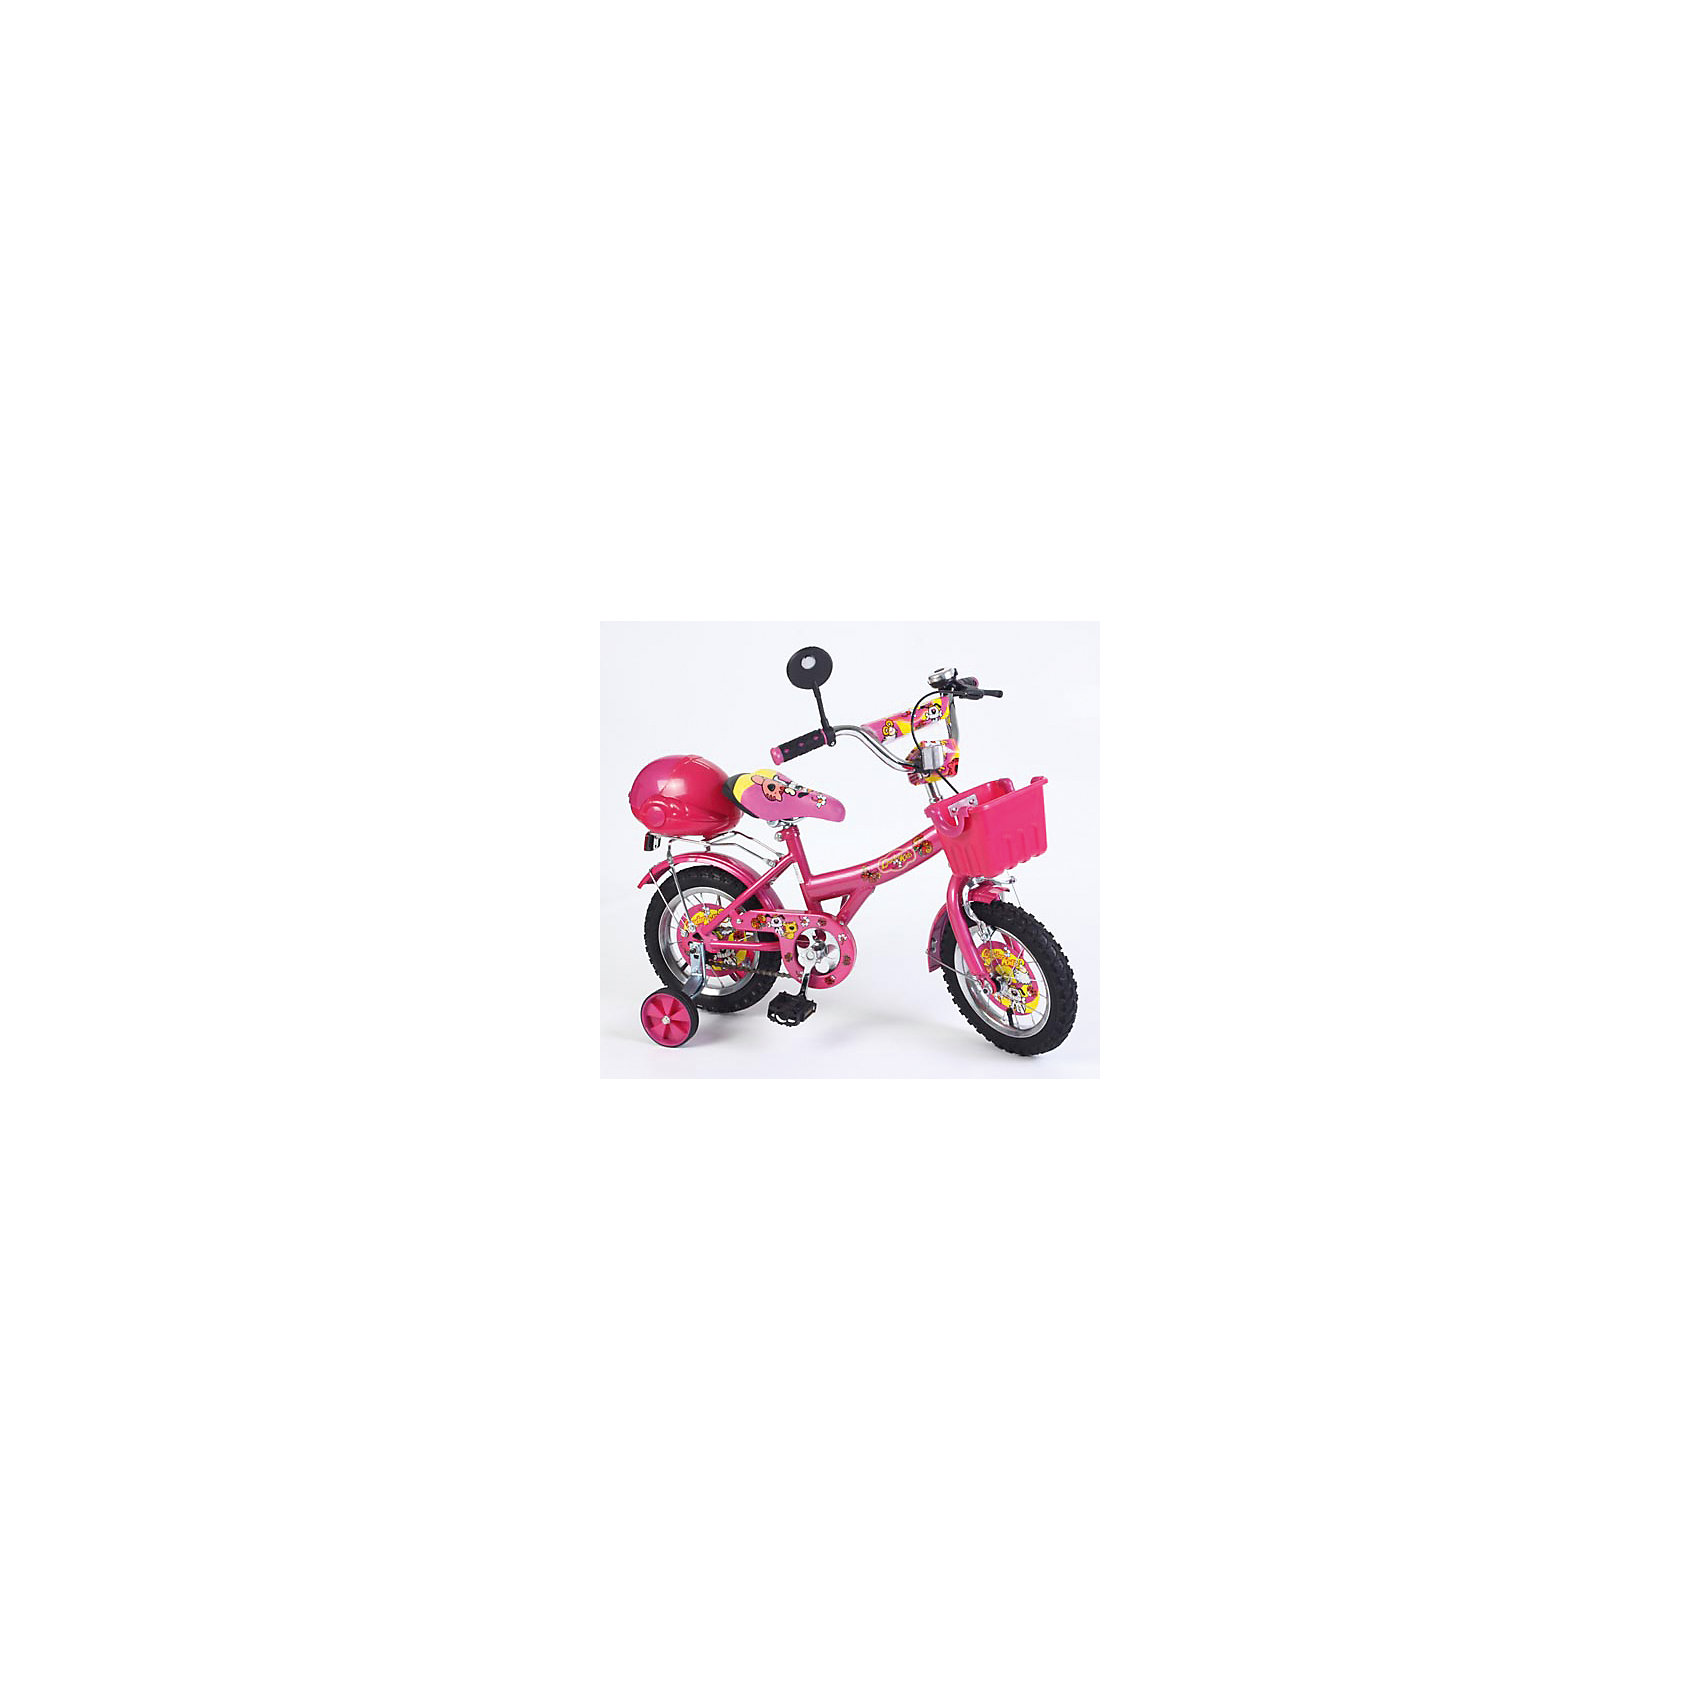 Велосипед двухколесный, розовый, с багажником, Leader kids